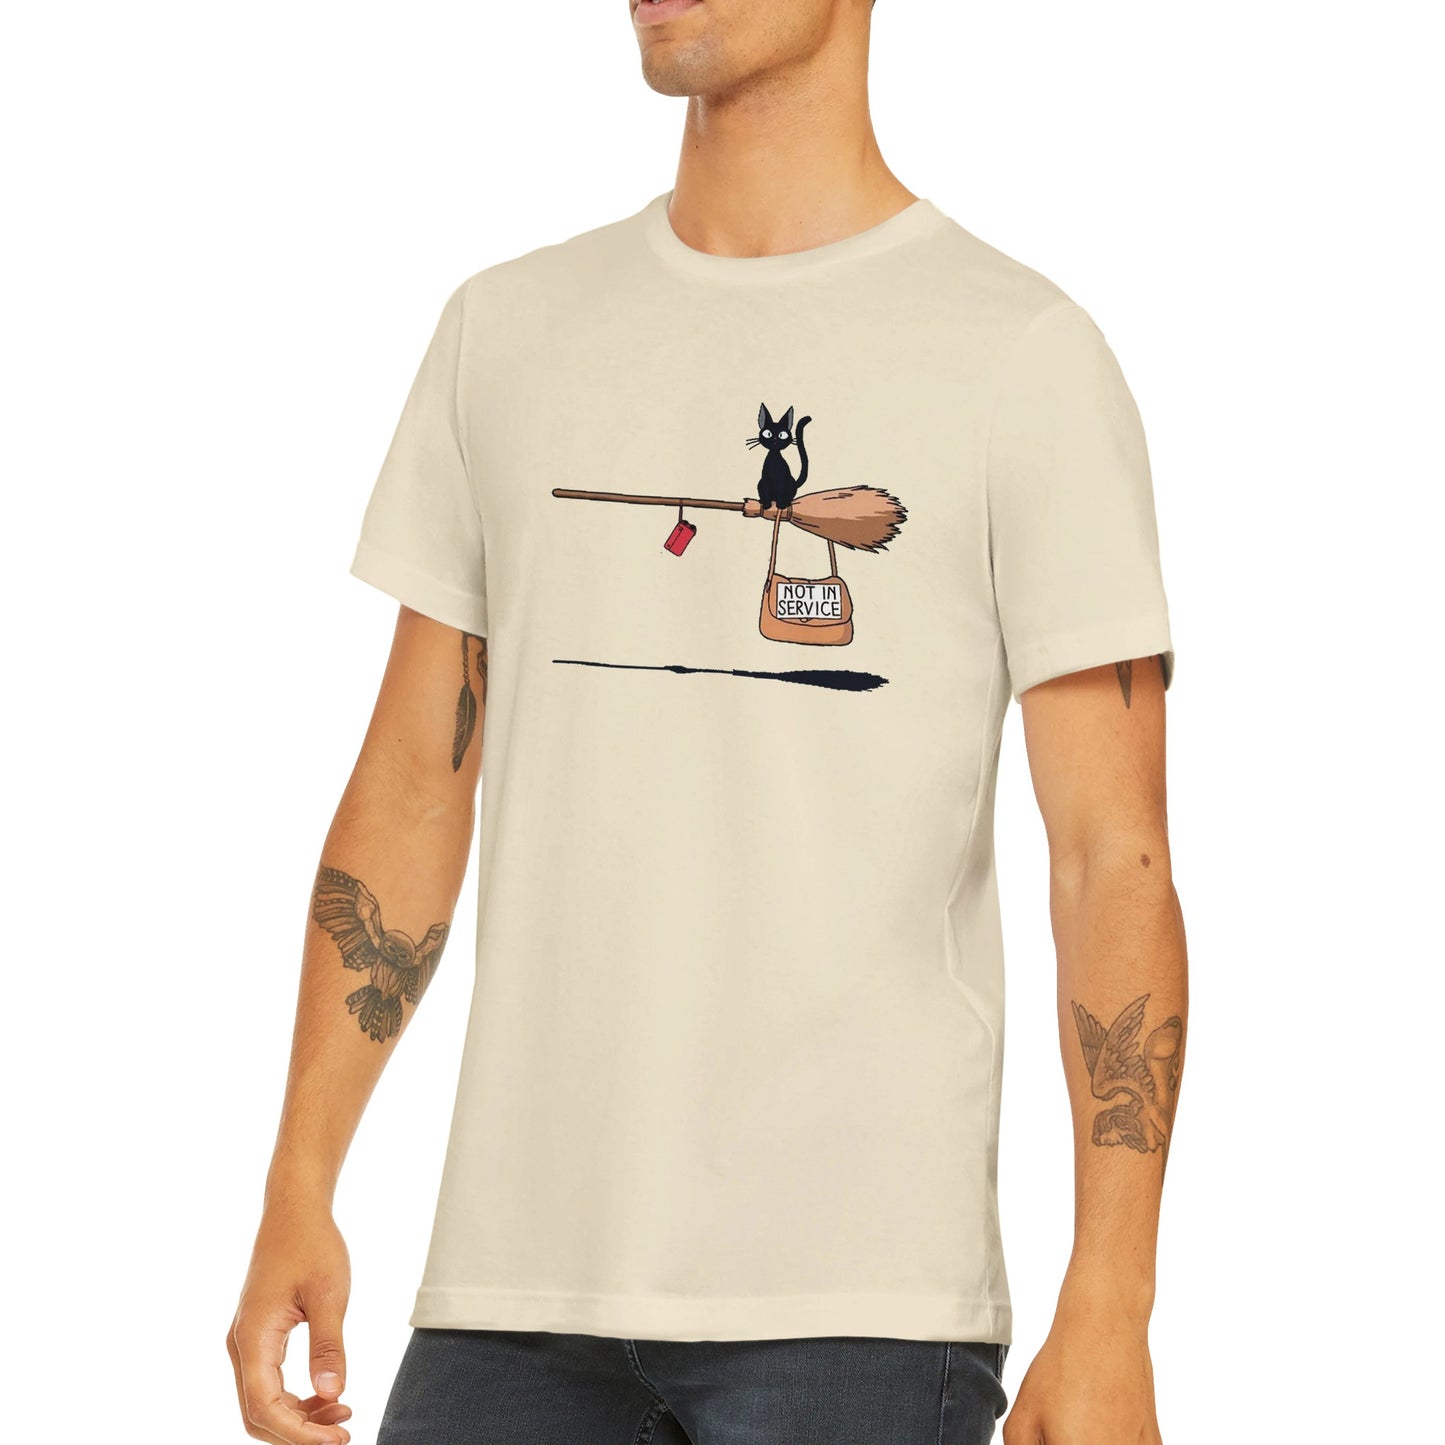 Günstiges Unisex-T-Shirt mit Rundhalsausschnitt/Nicht im Einsatz